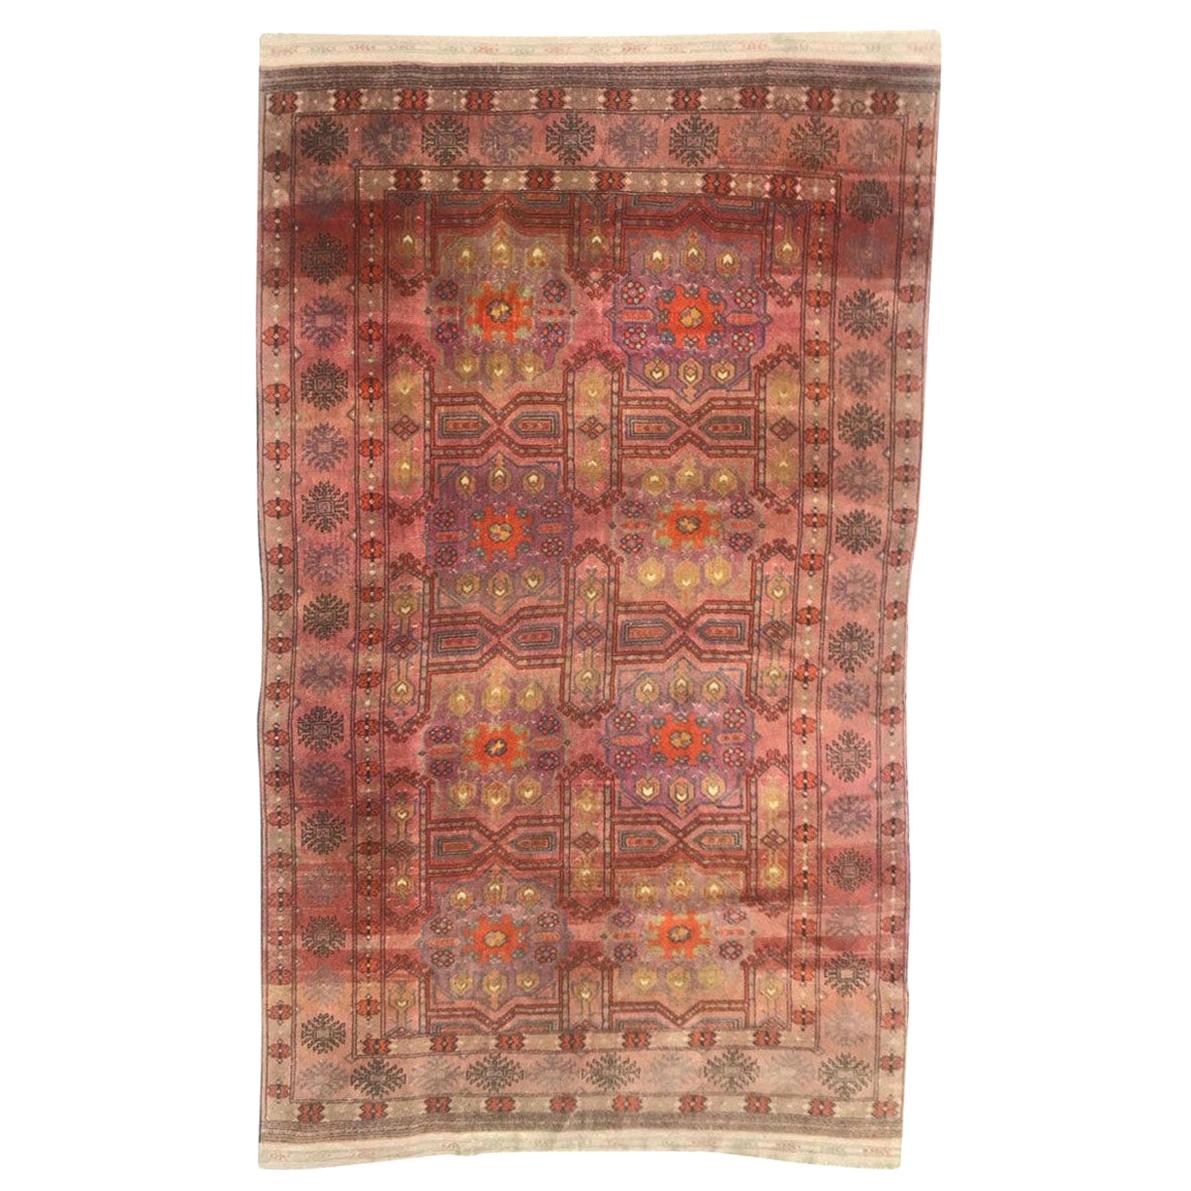 Le beau tapis turkmène vintage de Bobyrug